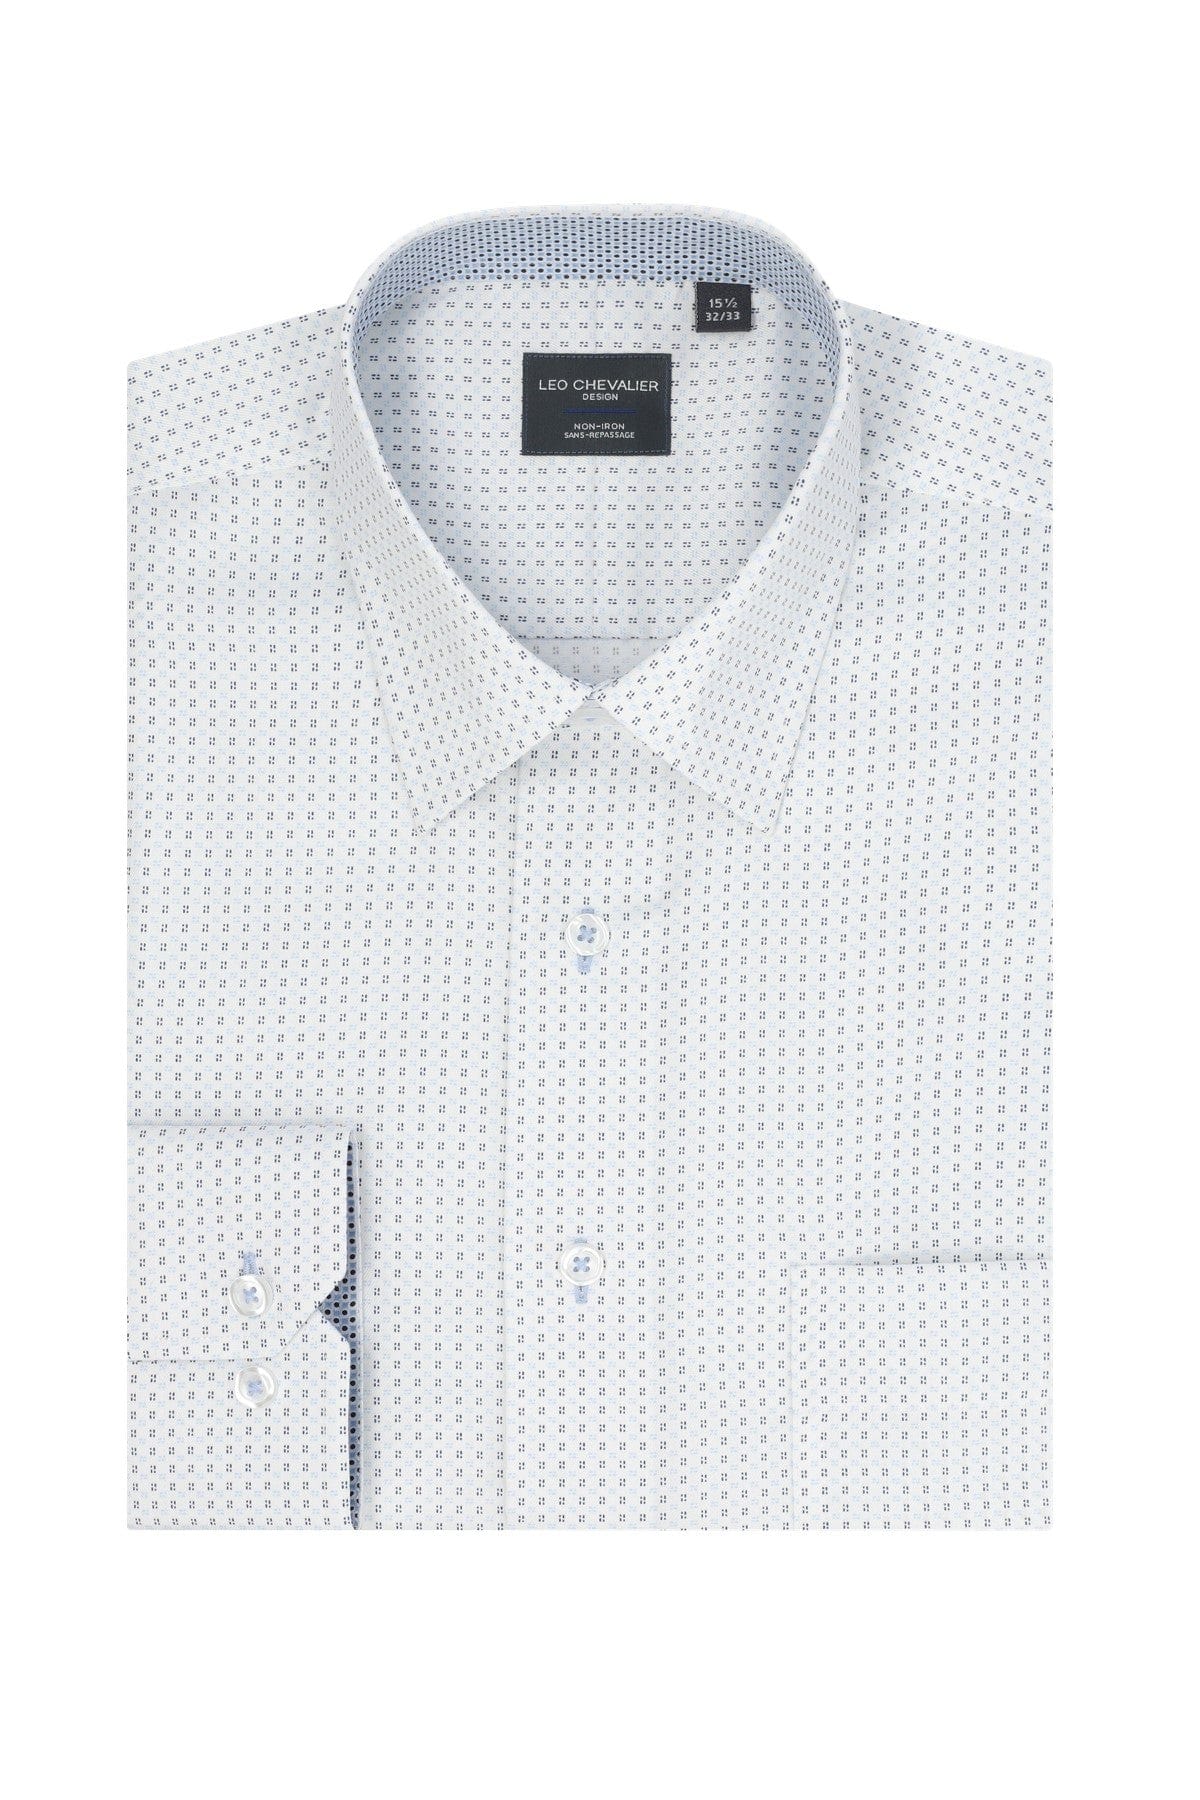 Leo Chevalier Design White 100% Cotton Non-Iron Long Sleeve Dress Shirts